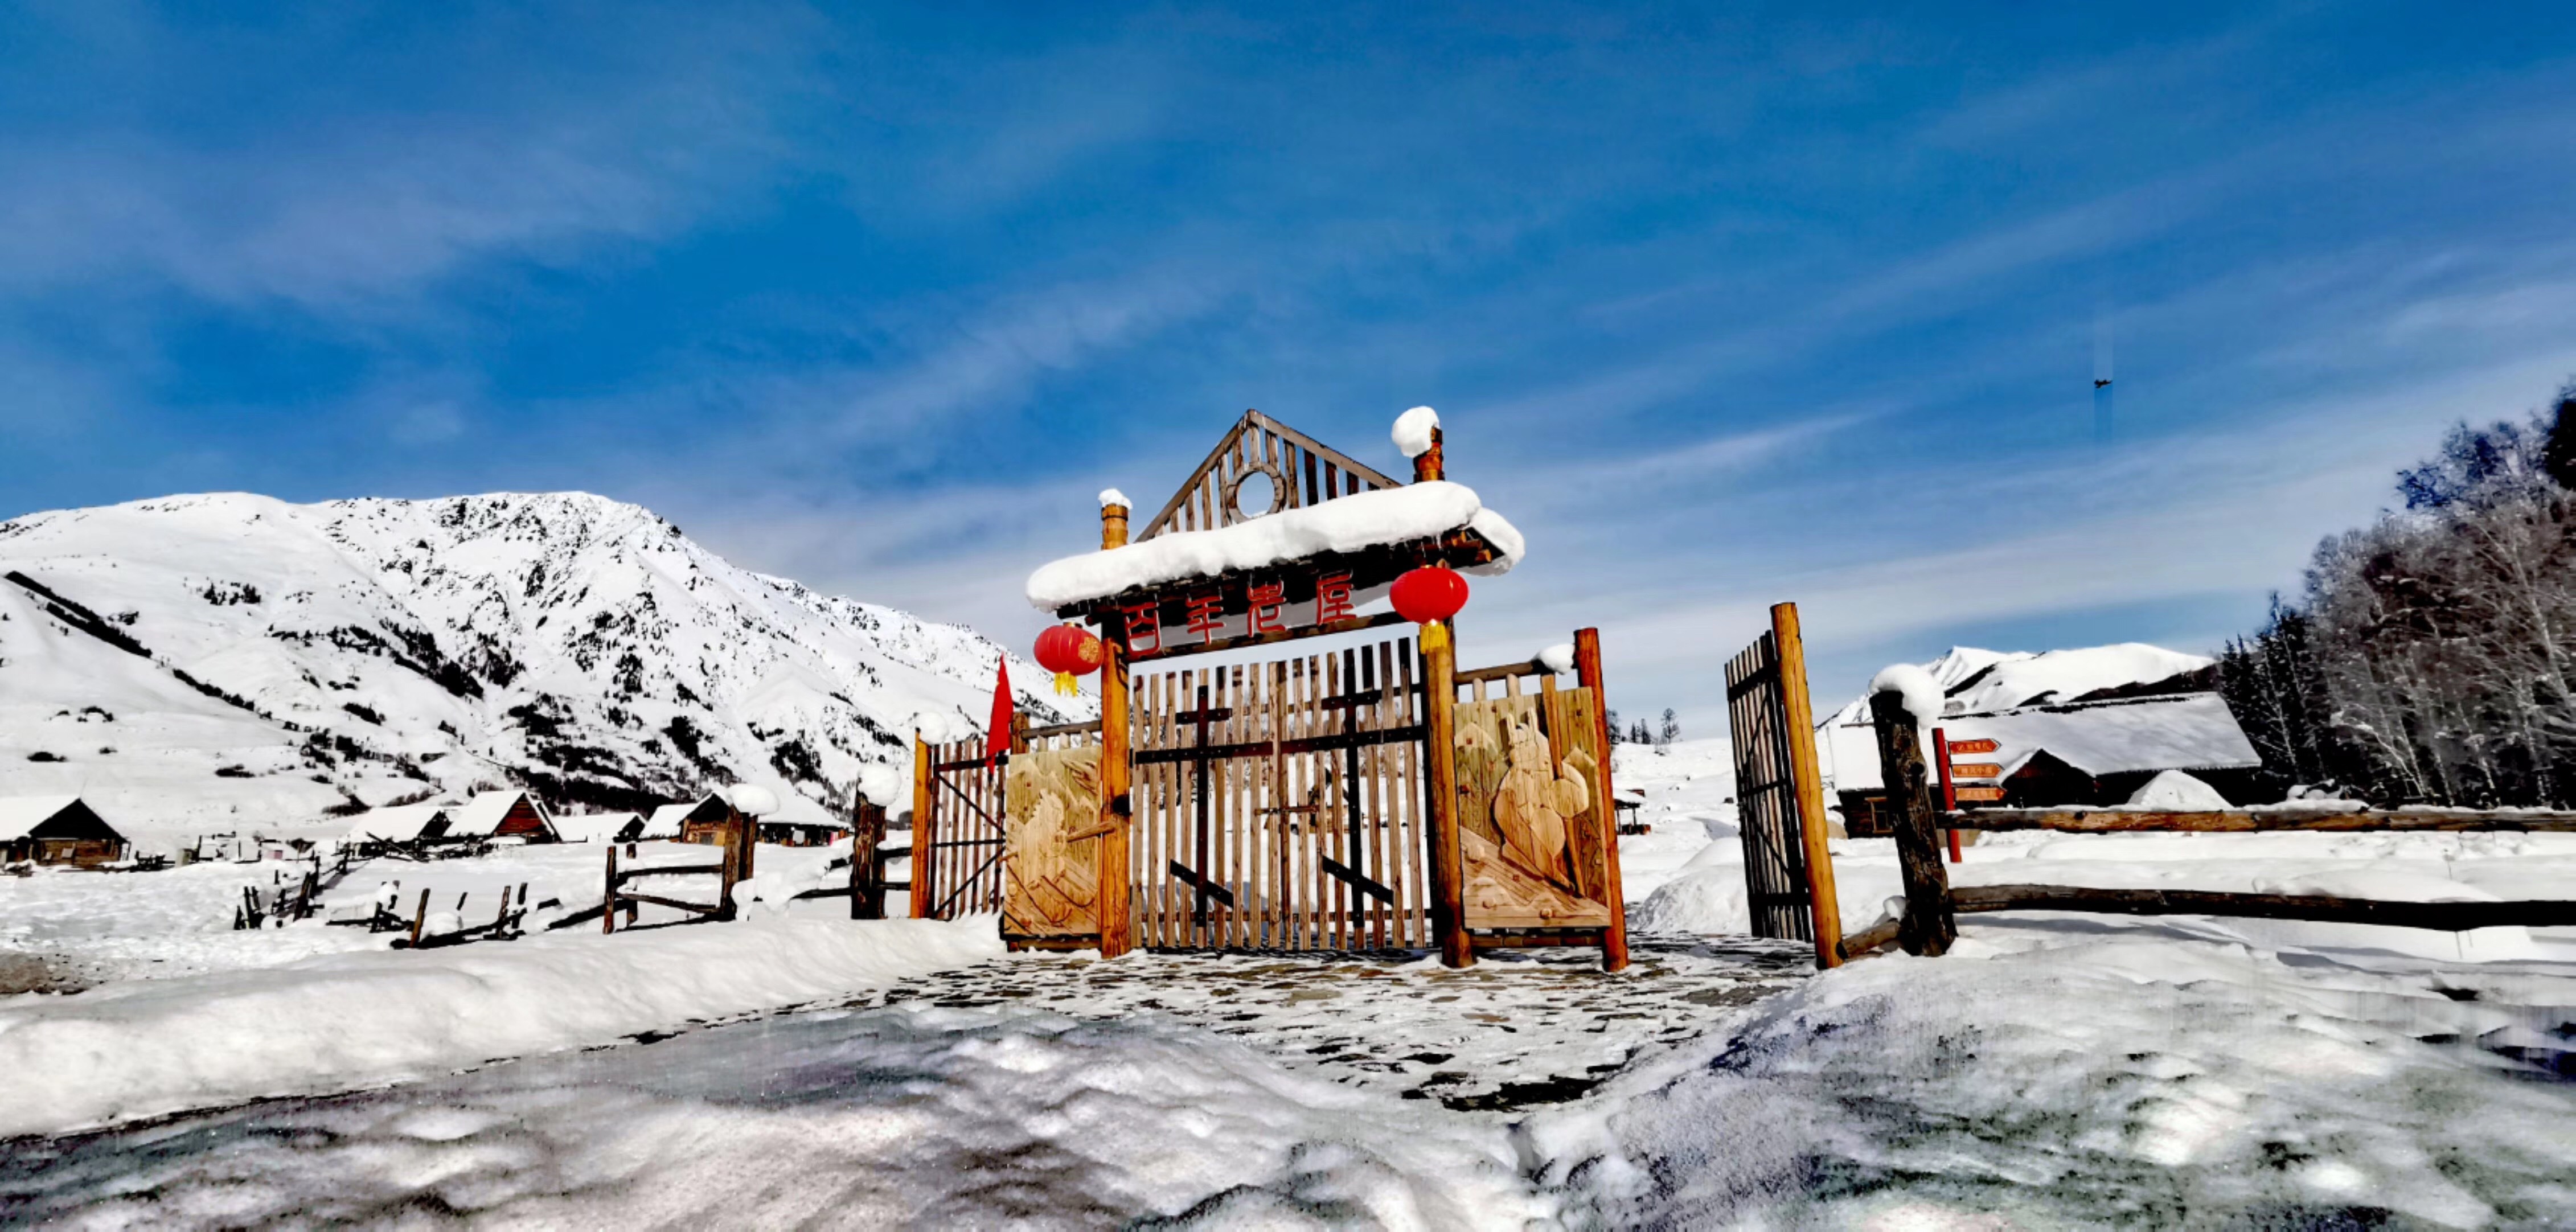 2019国际冬博会新疆阿勒泰“冰雪旅游”推介活动精彩纷呈_国家旅游地理_探索自然 传播人文 愉悦身心